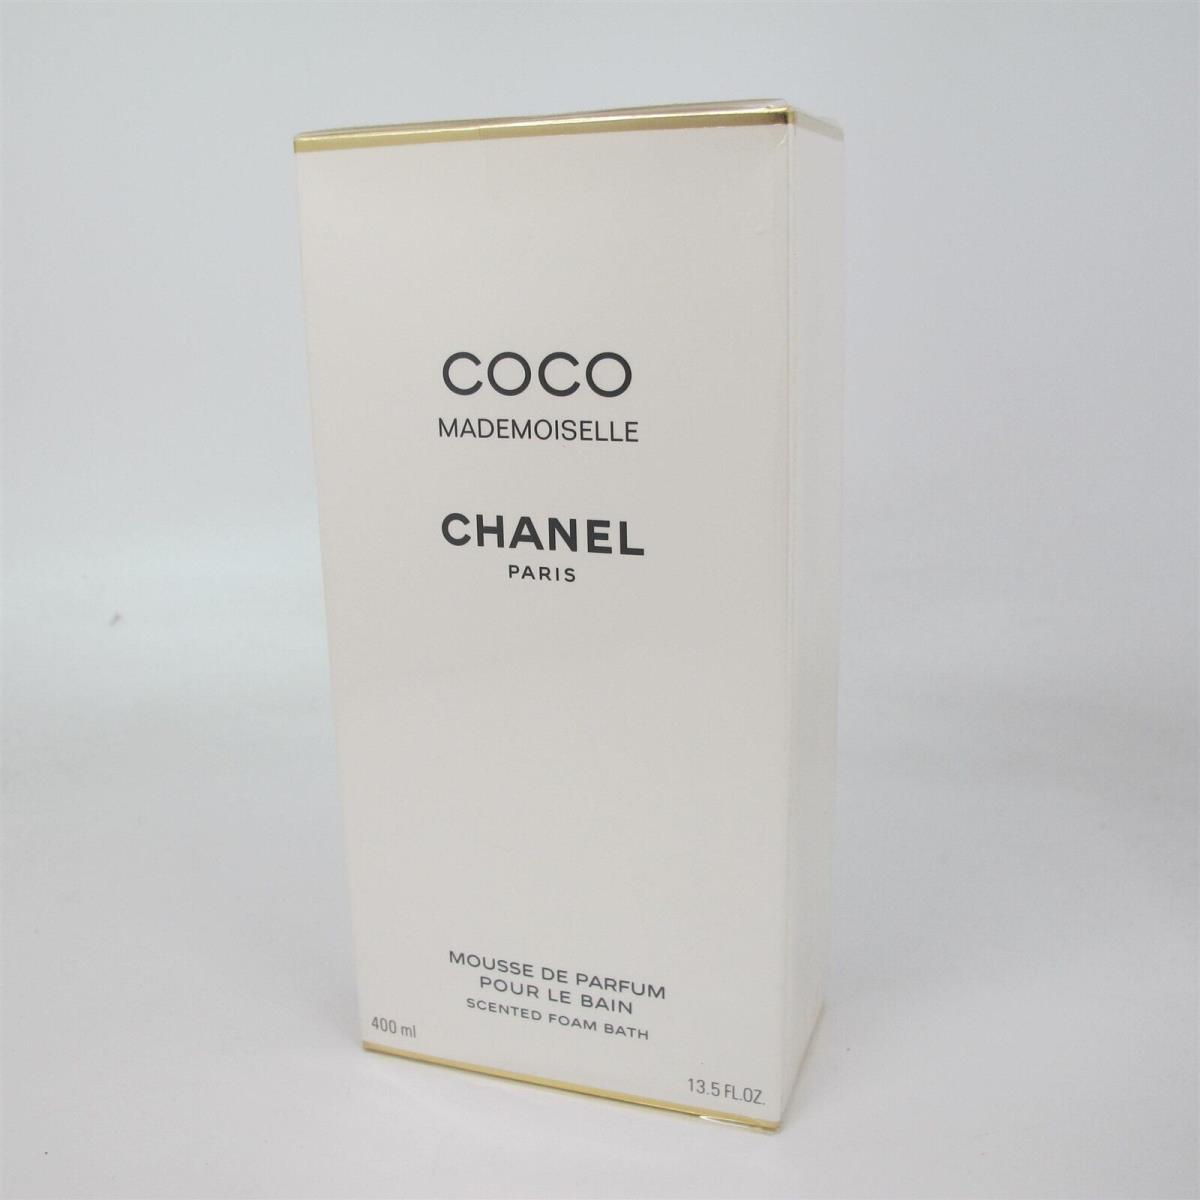 Coco Mademoiselle by Chanel 400 ml/13.5 oz Scented Foam Bath Huge Bottle